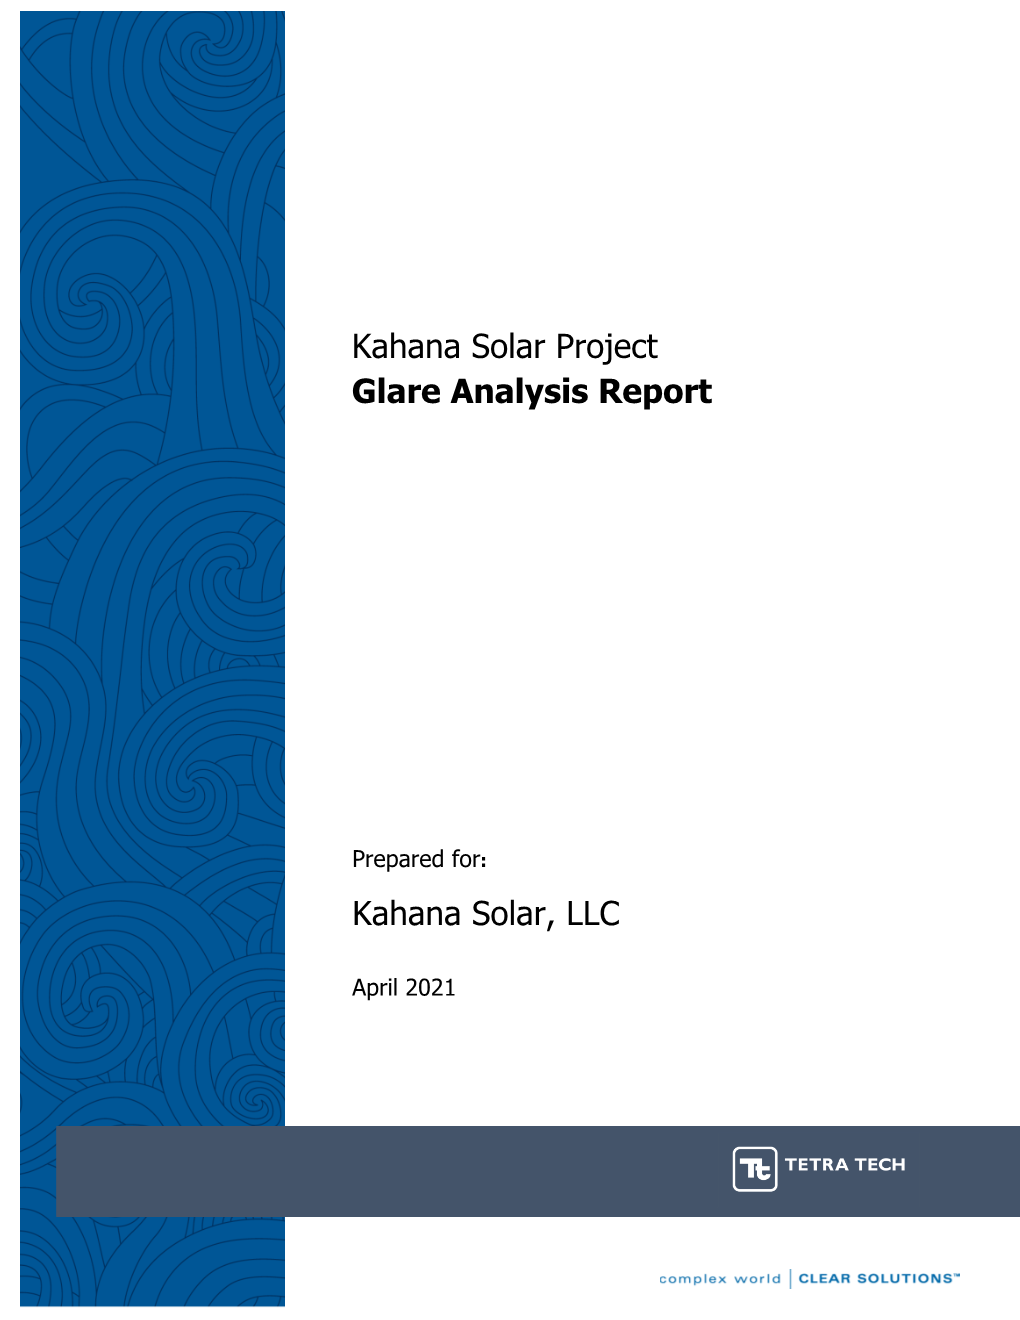 Kahana Solar Project Glare Analysis Report